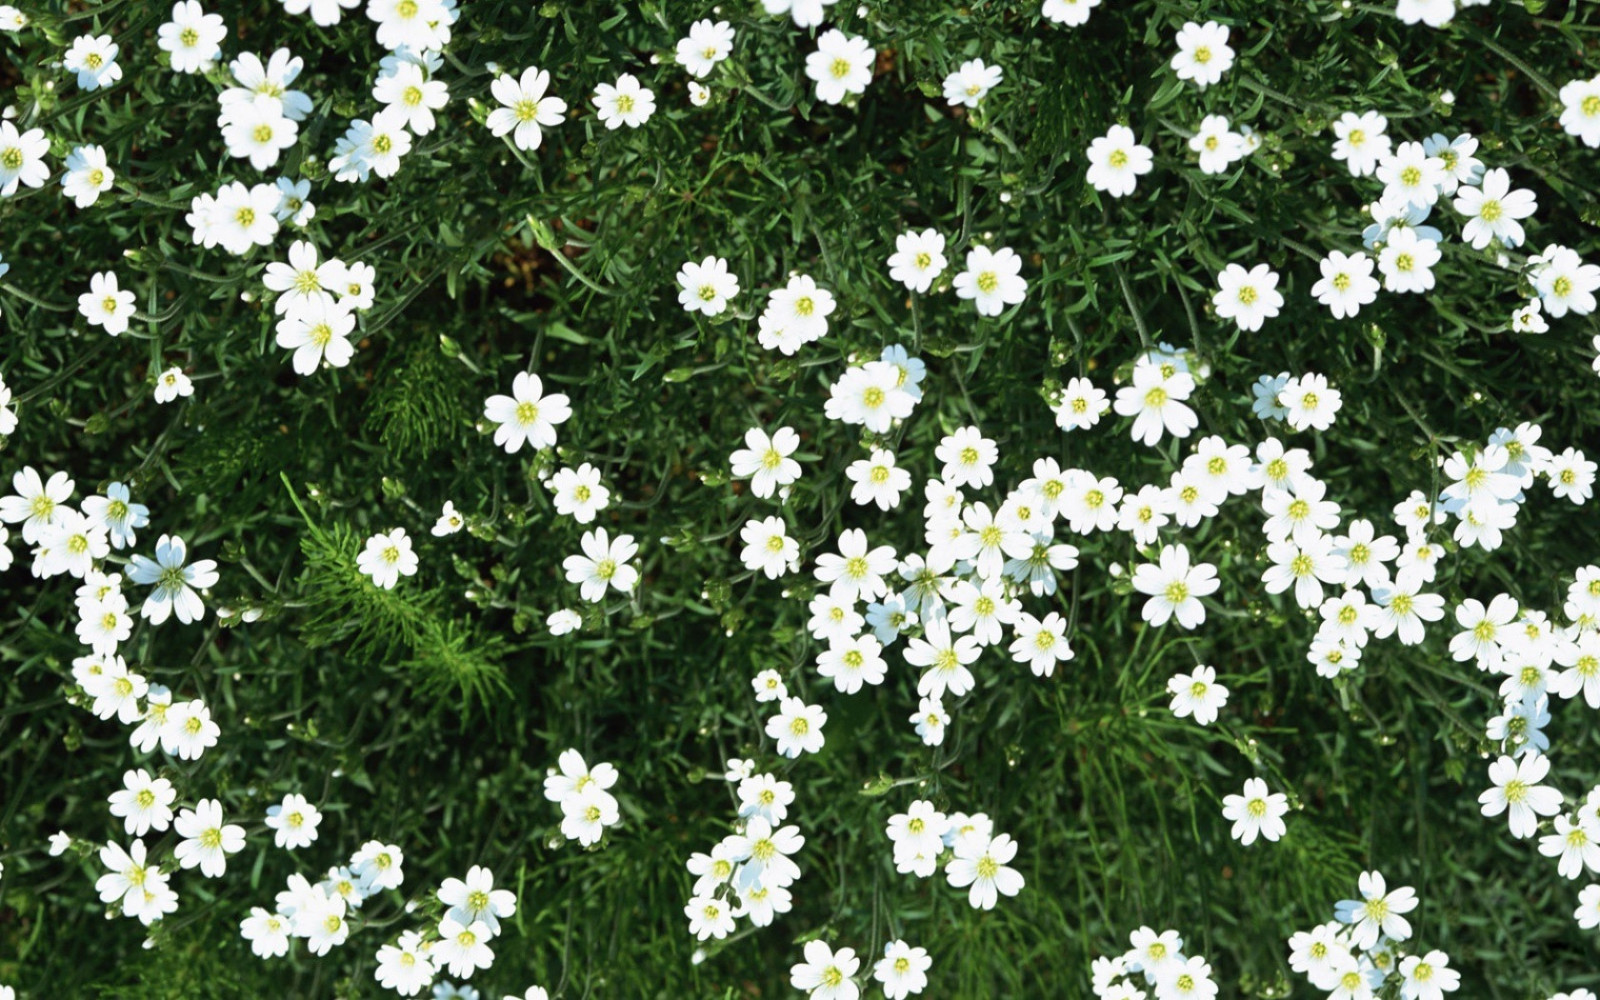 Название цветов мелкие белого цвета. Мелкие беленькие цветочки. Растение с маленькими белыми цветочками. Мелкие белые цветы. Маленькие беленькие цветочки.